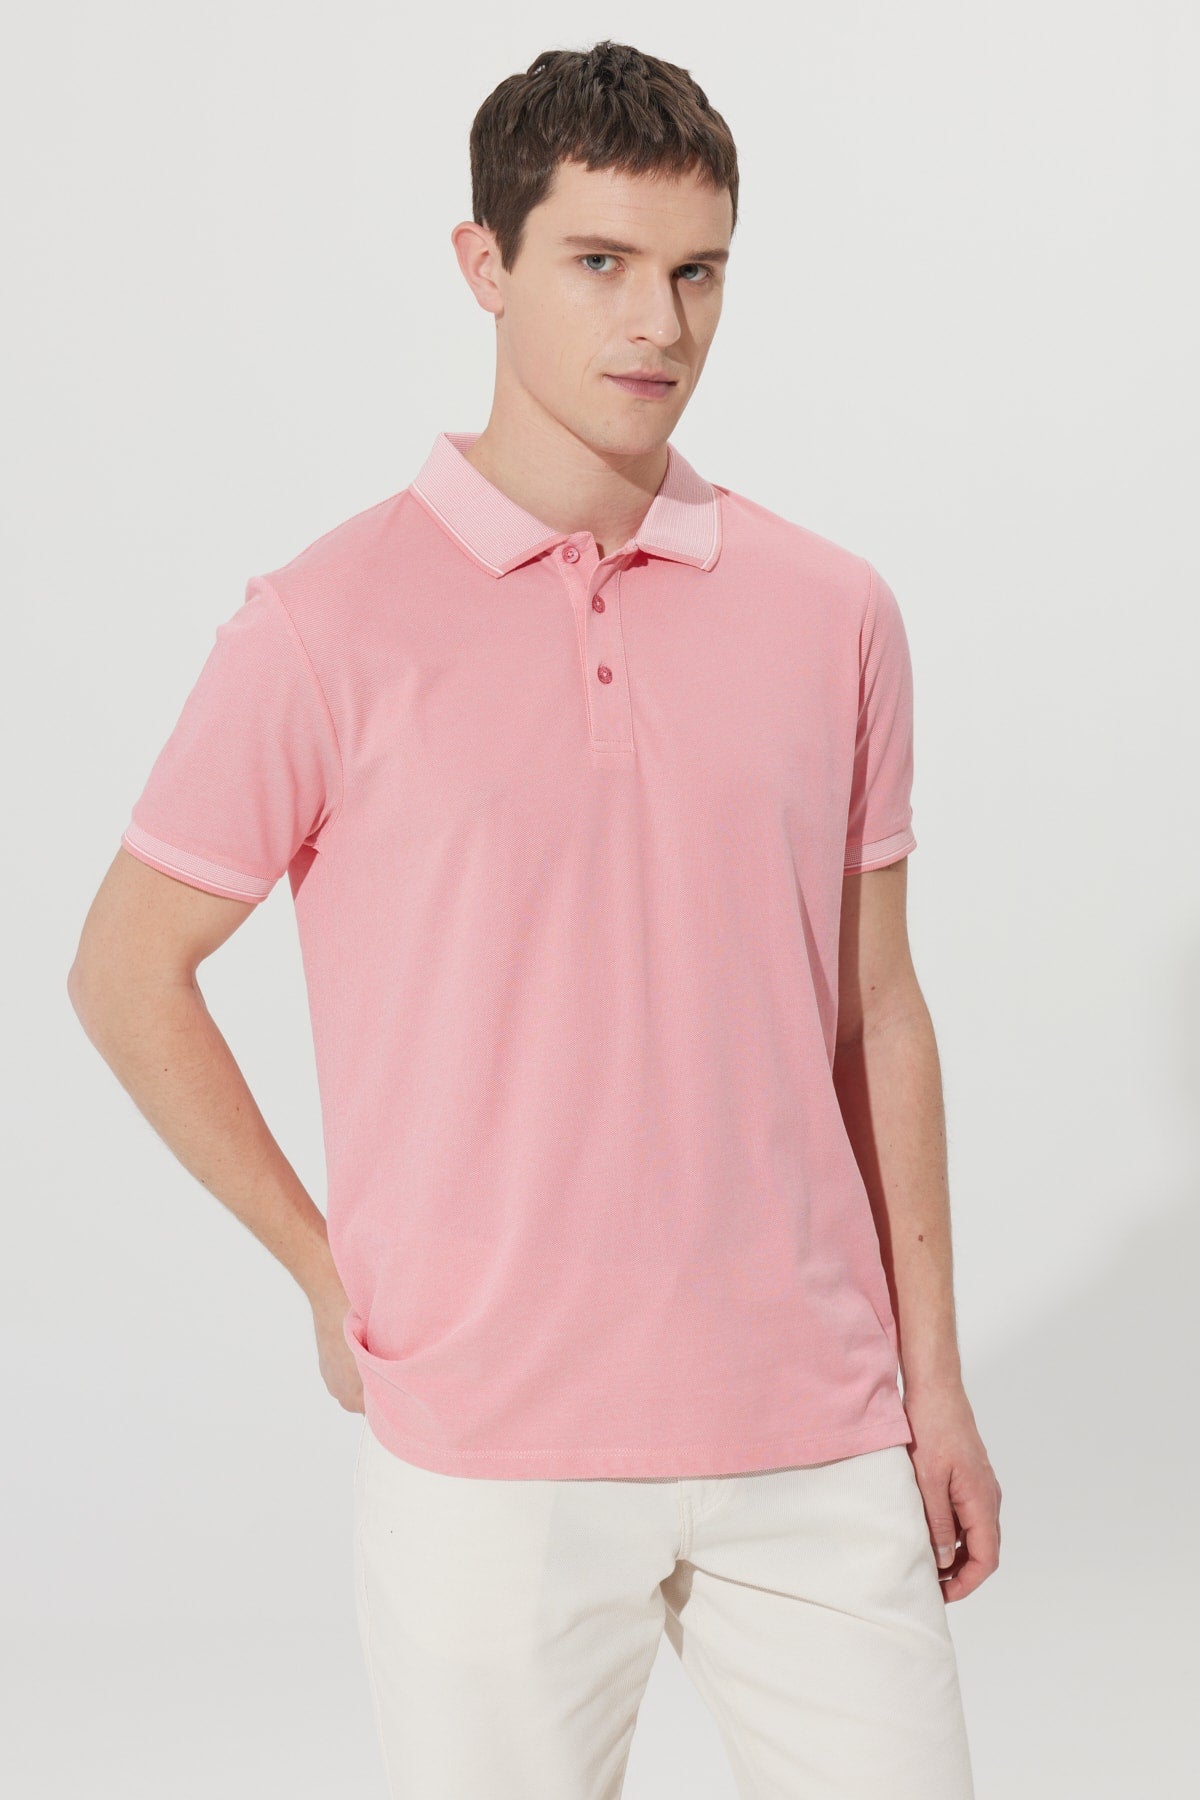  Мужская безусадочная хлопчатобумажная ткань Slim Fit Slim Fit розово-белая футболка с воротником-поло с защитой от перекатывания